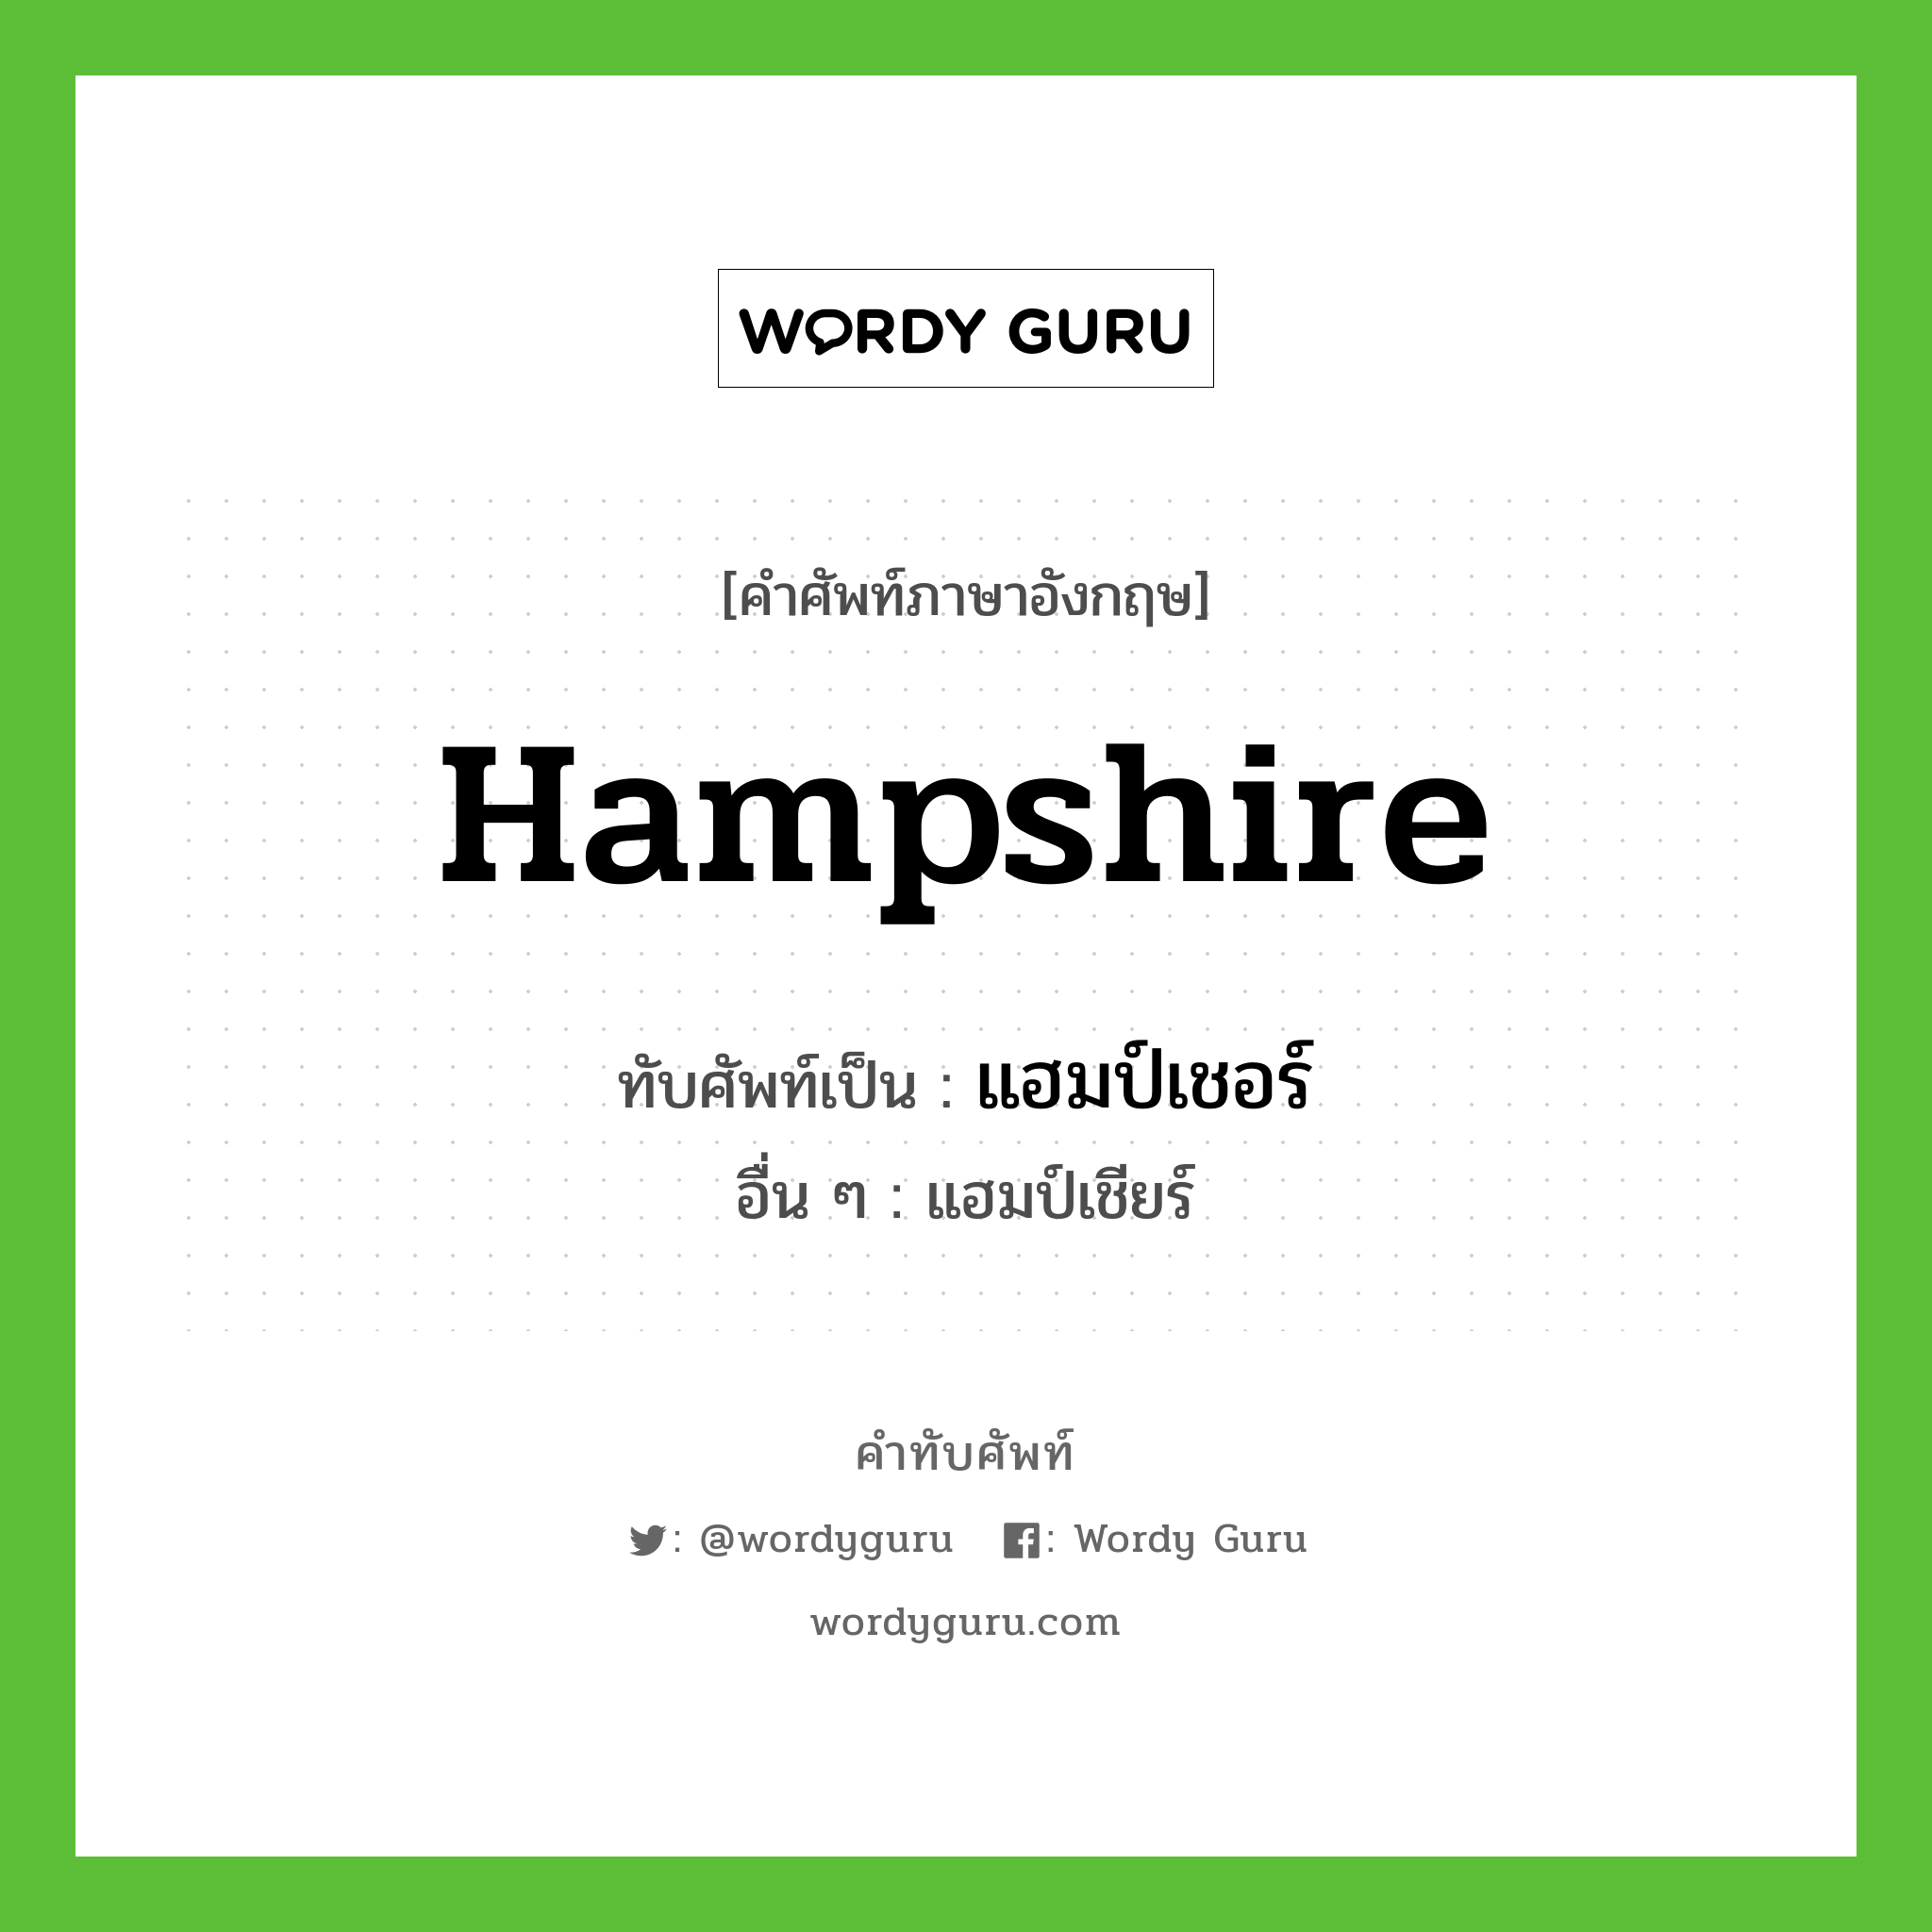 แฮมป์เชอร์ เขียนอย่างไร?, คำศัพท์ภาษาอังกฤษ แฮมป์เชอร์ ทับศัพท์เป็น Hampshire อื่น ๆ แฮมป์เชียร์